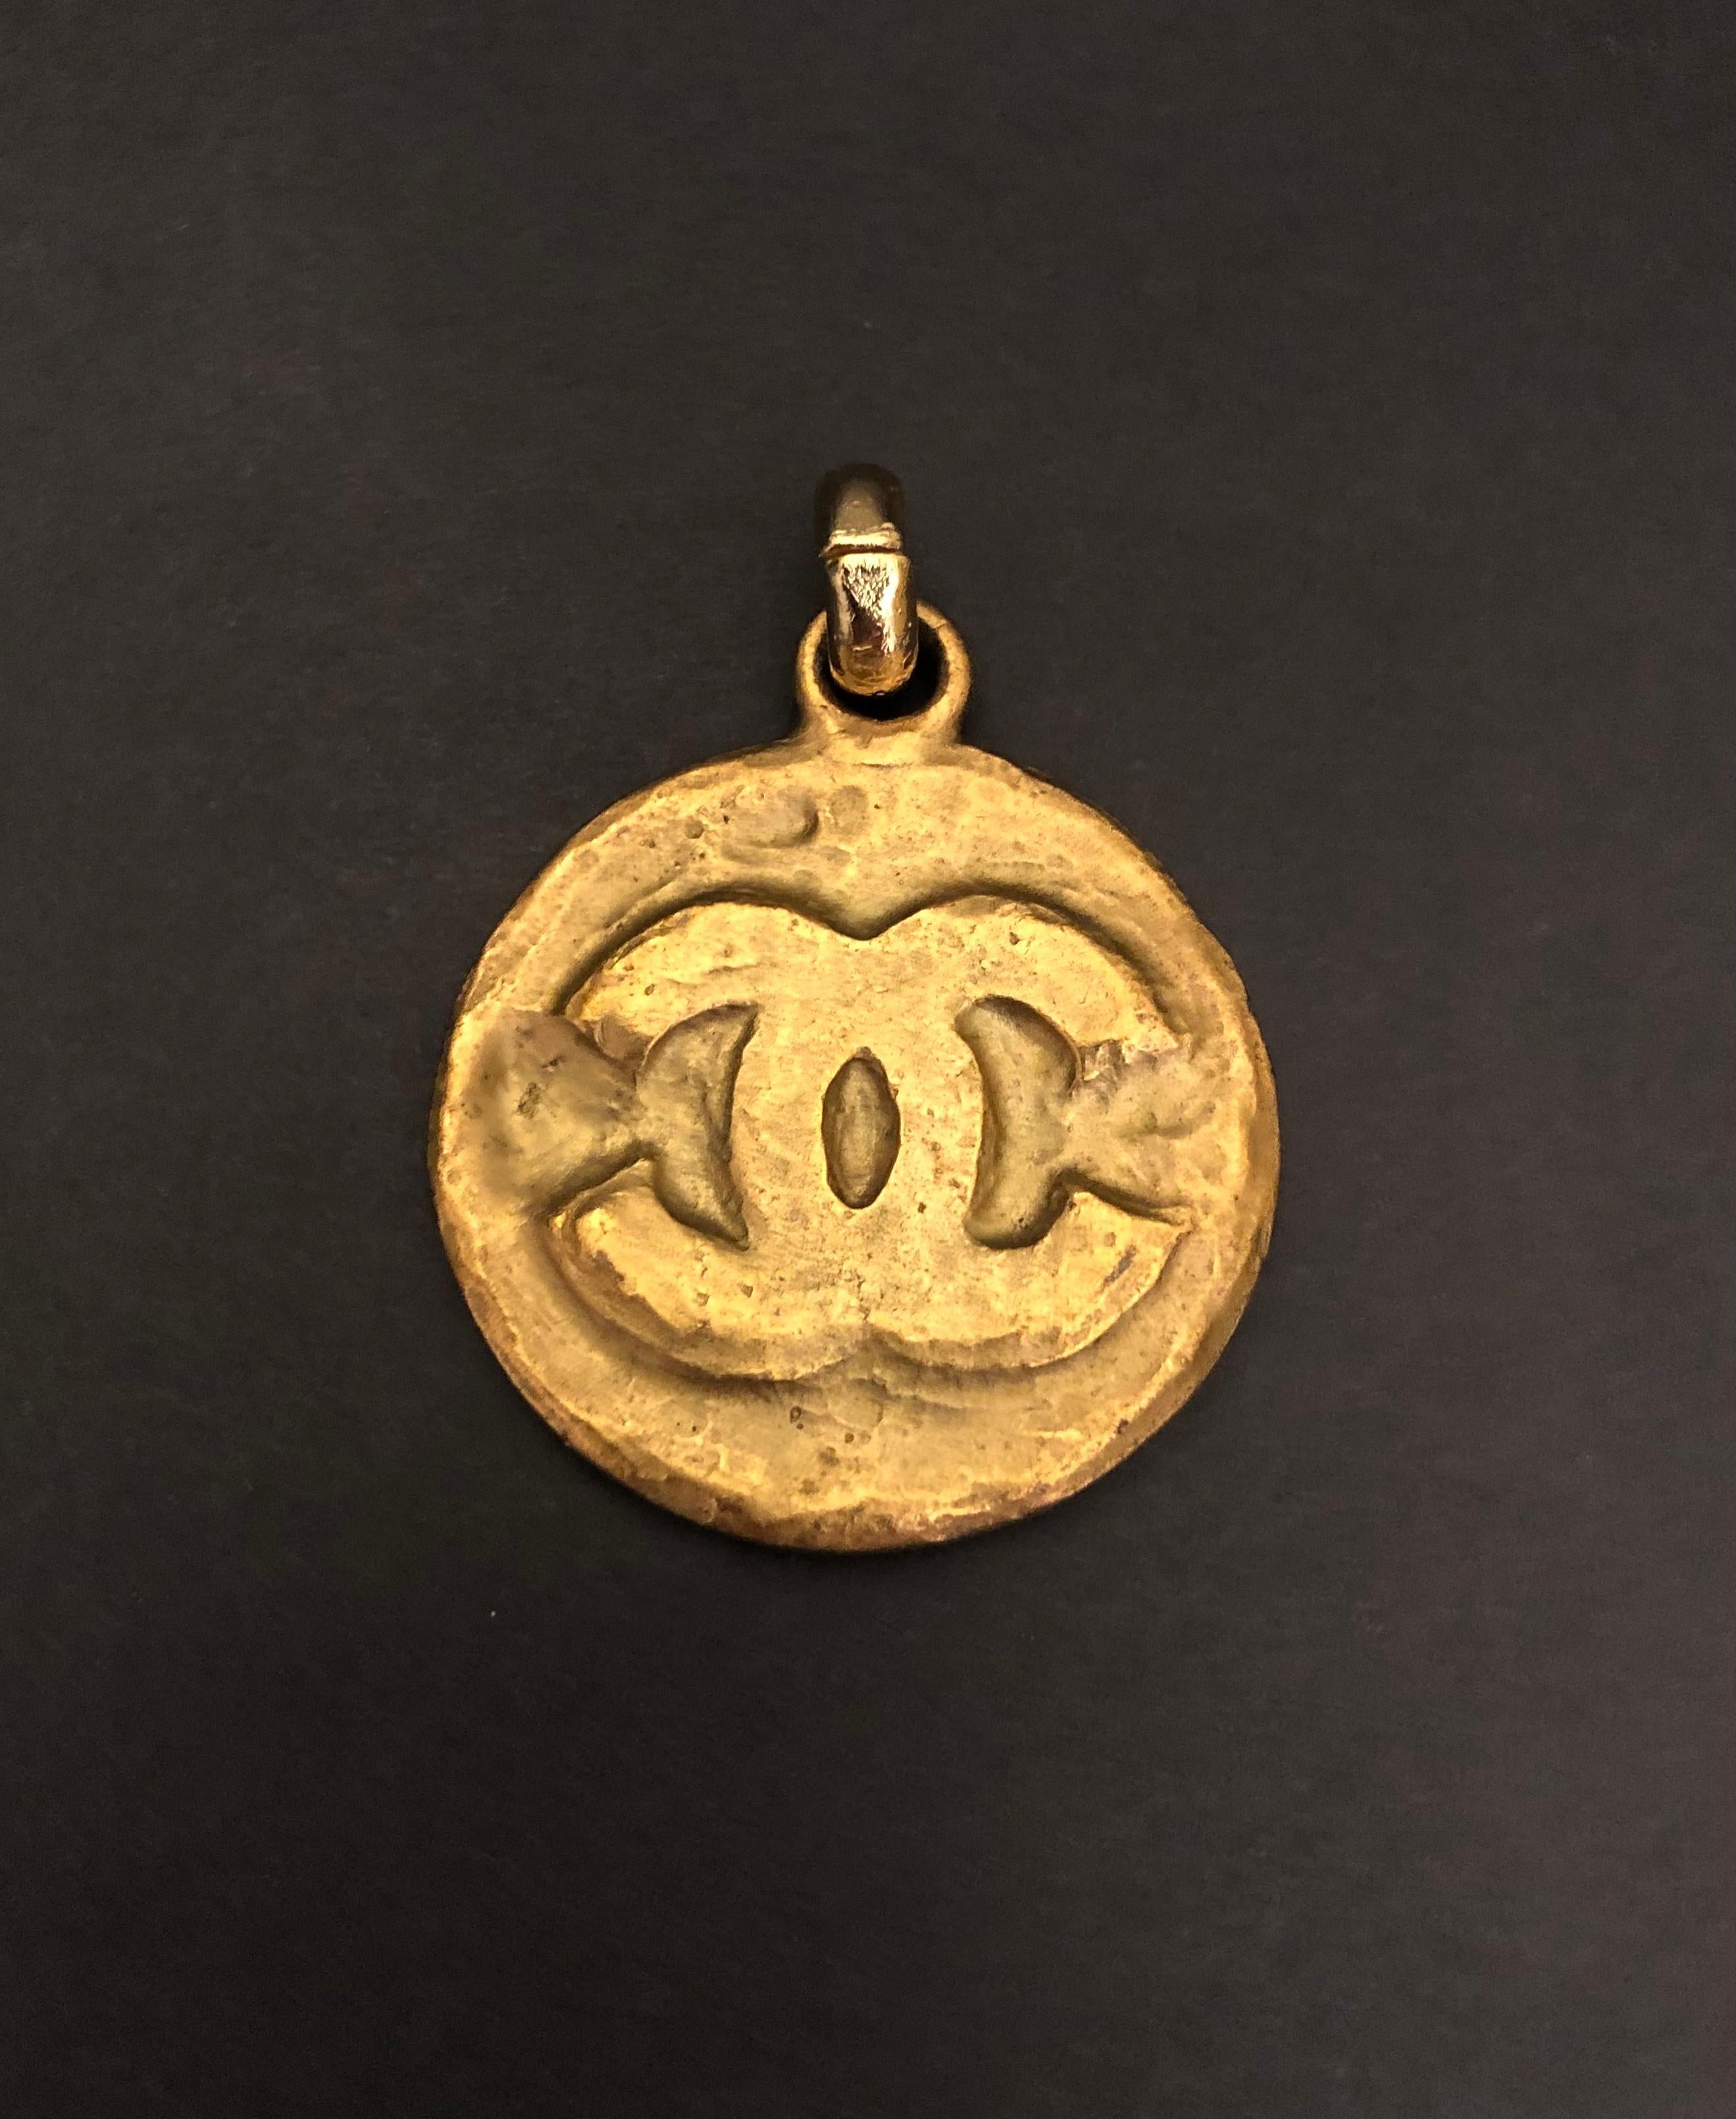 Cette breloque vintage CHANEL en forme de médaillon, qui faisait partie d'un porte-clés vintage CHANEL, est fabriquée en métal doré dans un style byzantin. Mesure environ 4 x 4,7 cm. Ce charme peut être fixé sur une chaîne dorée ou un collier de